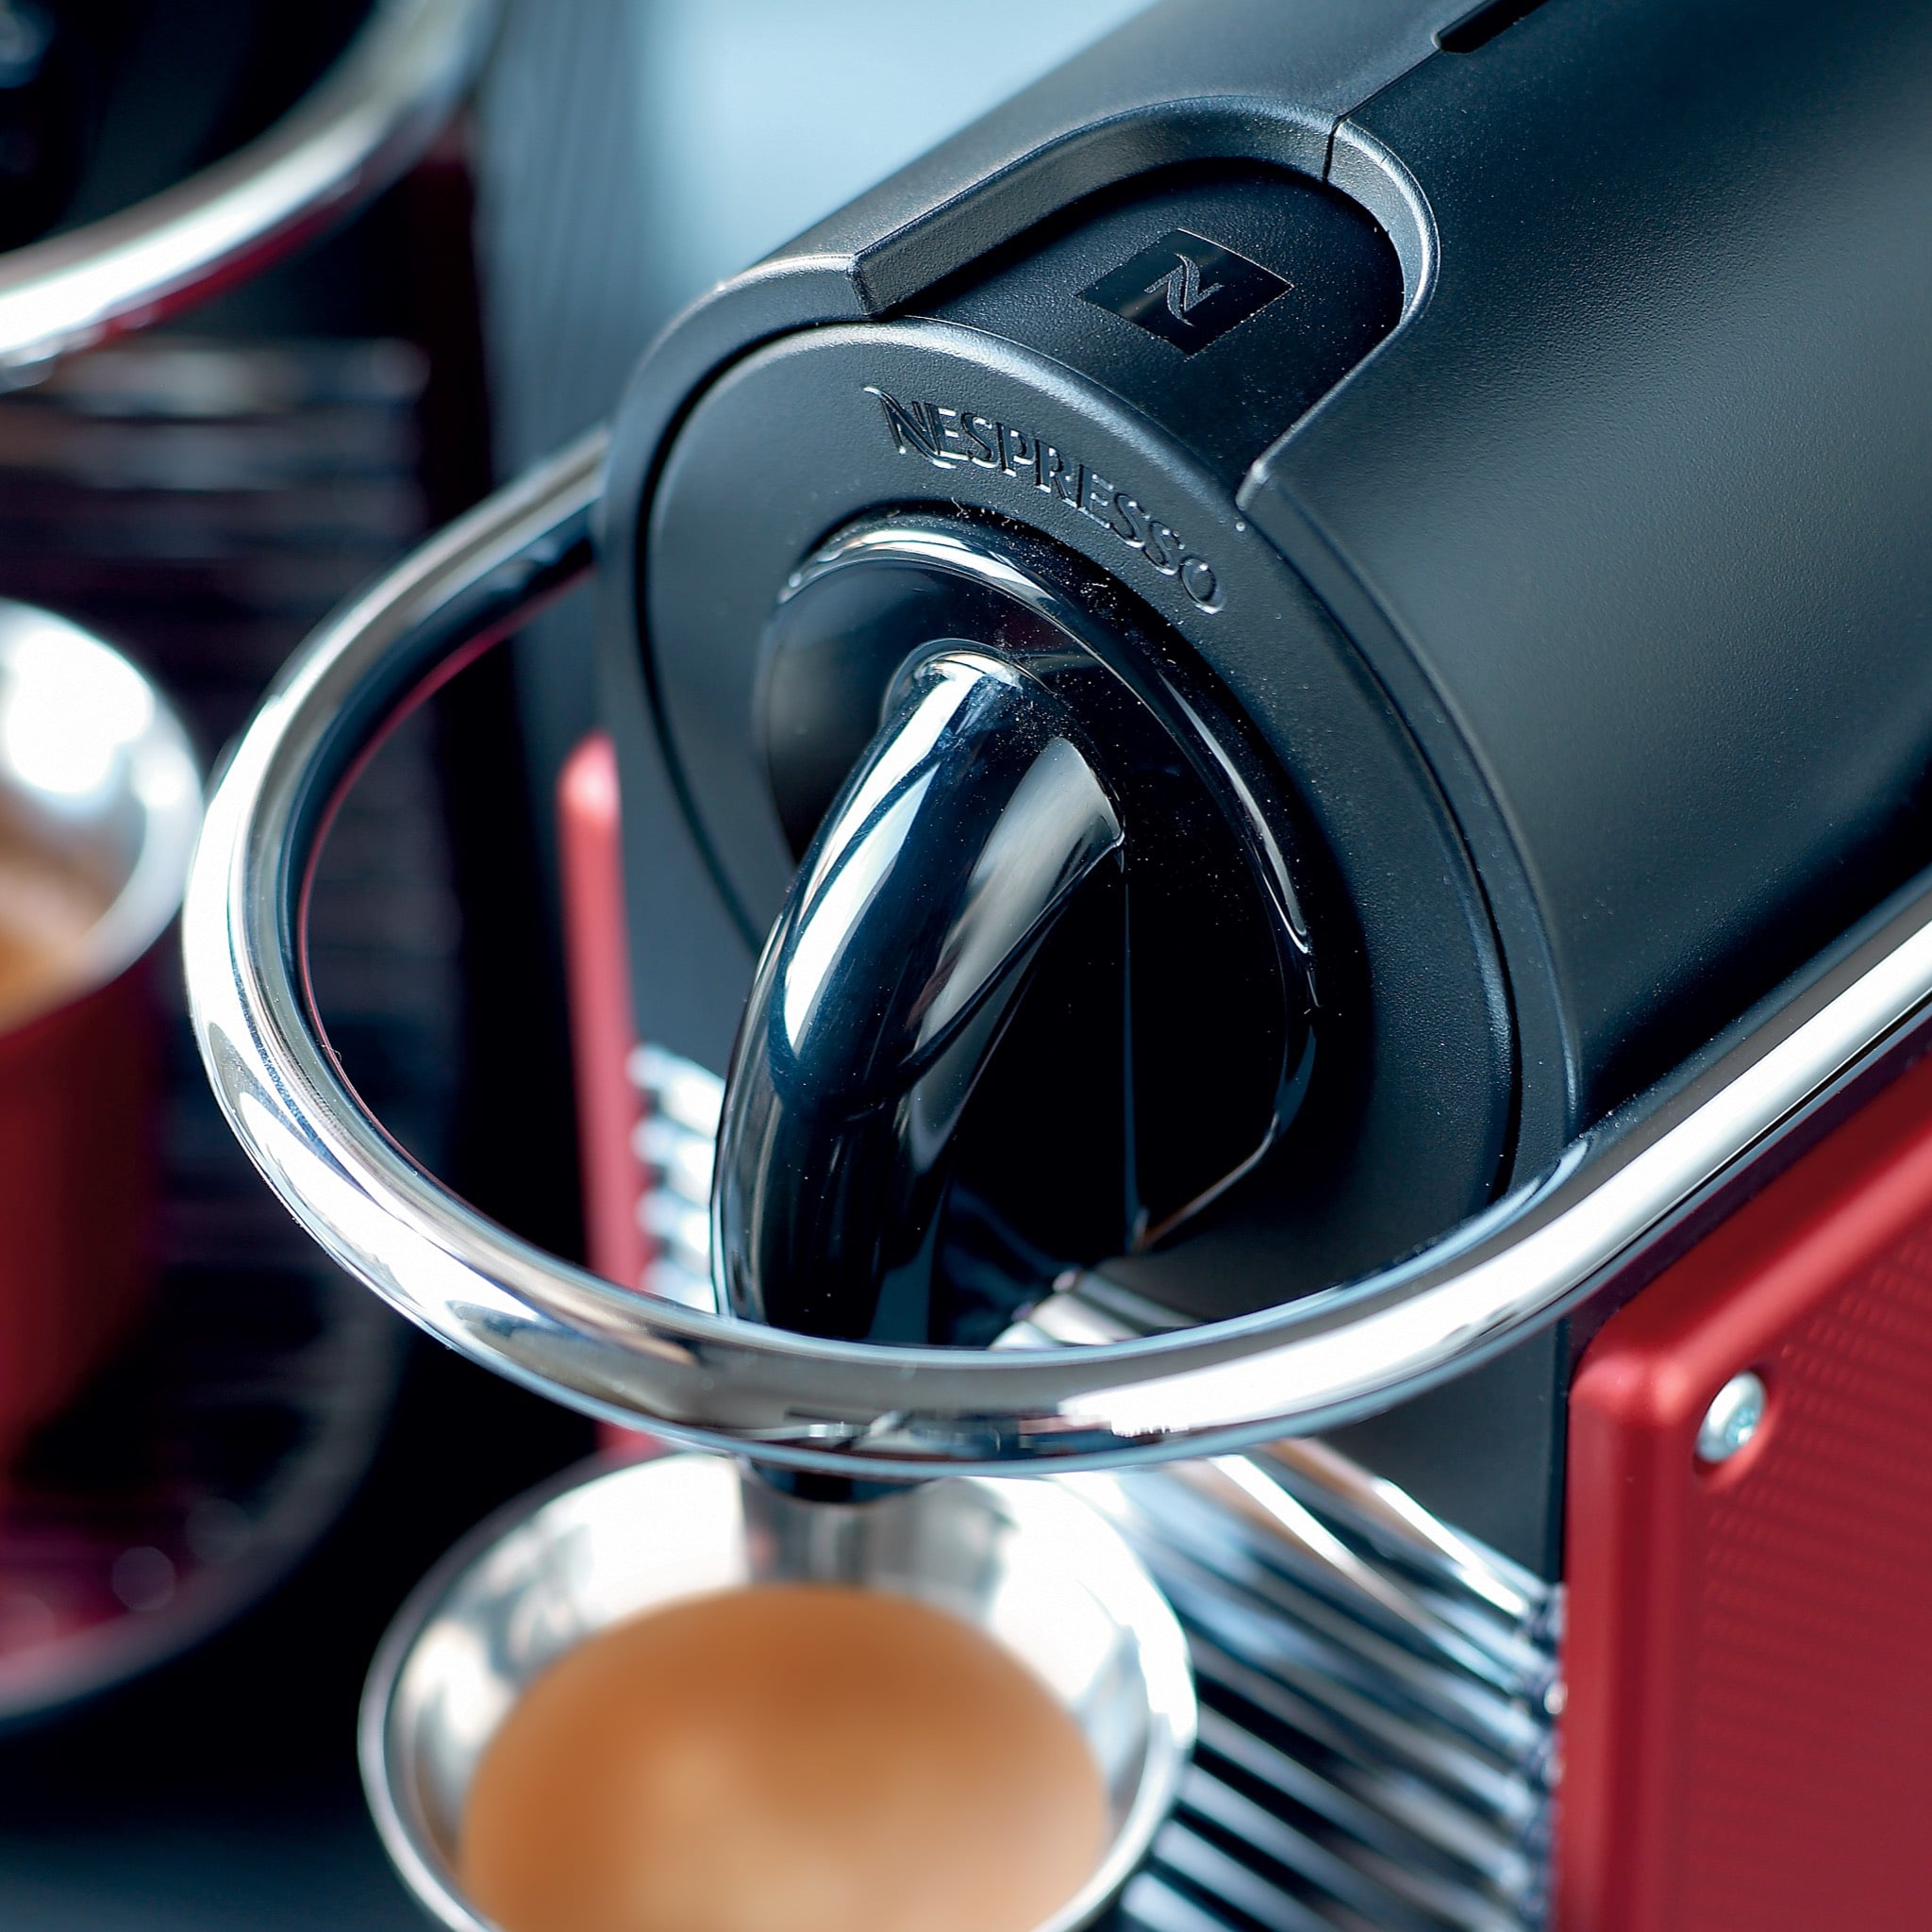 PIXIE Calfskin Nespresso Coffee machine